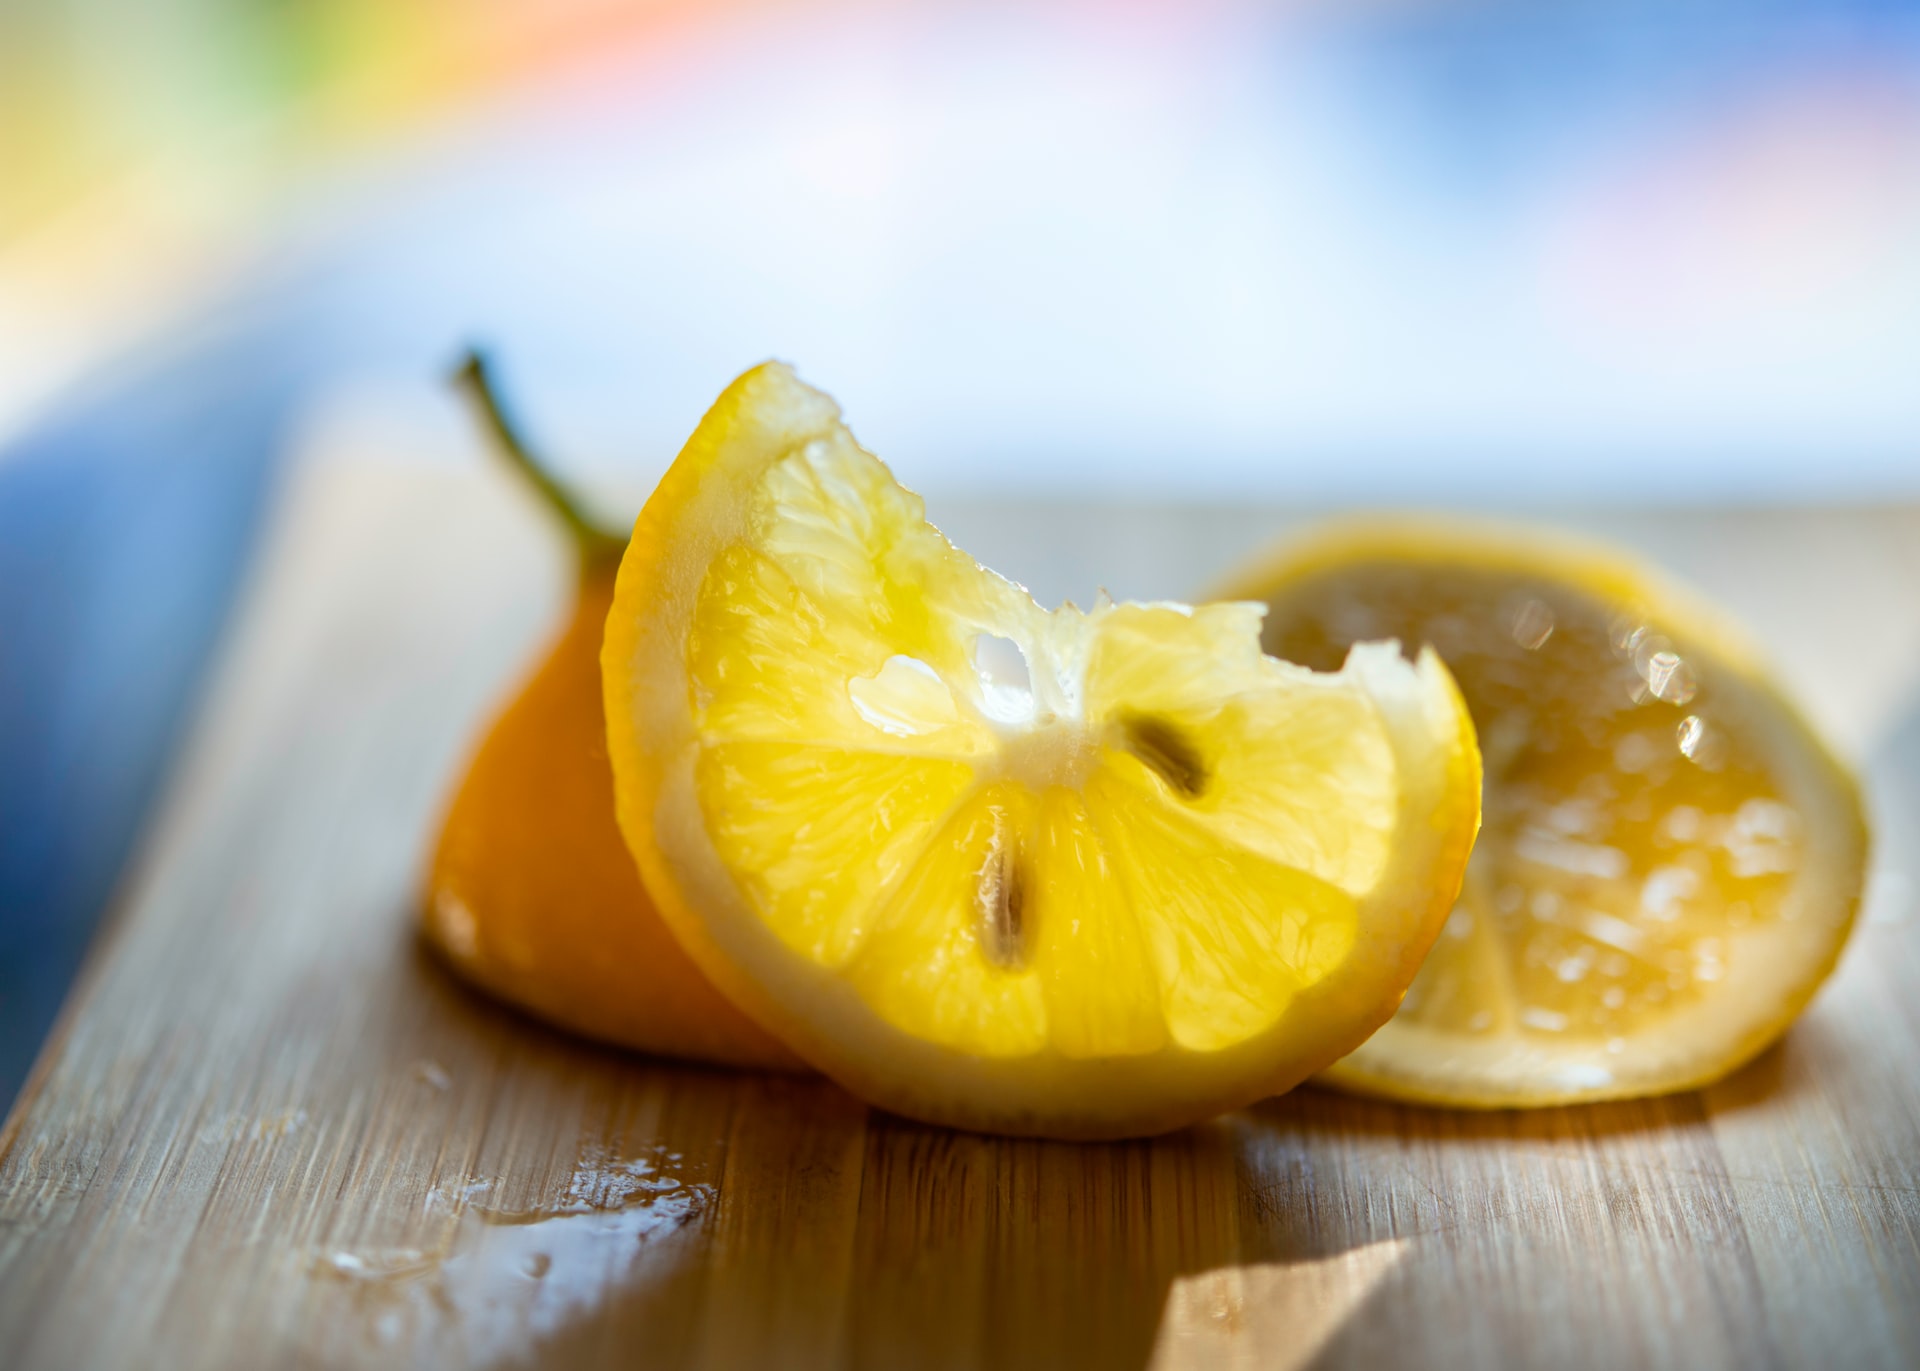 Aprenda a usar o limão para limpar roupas, torneiras e superfícies